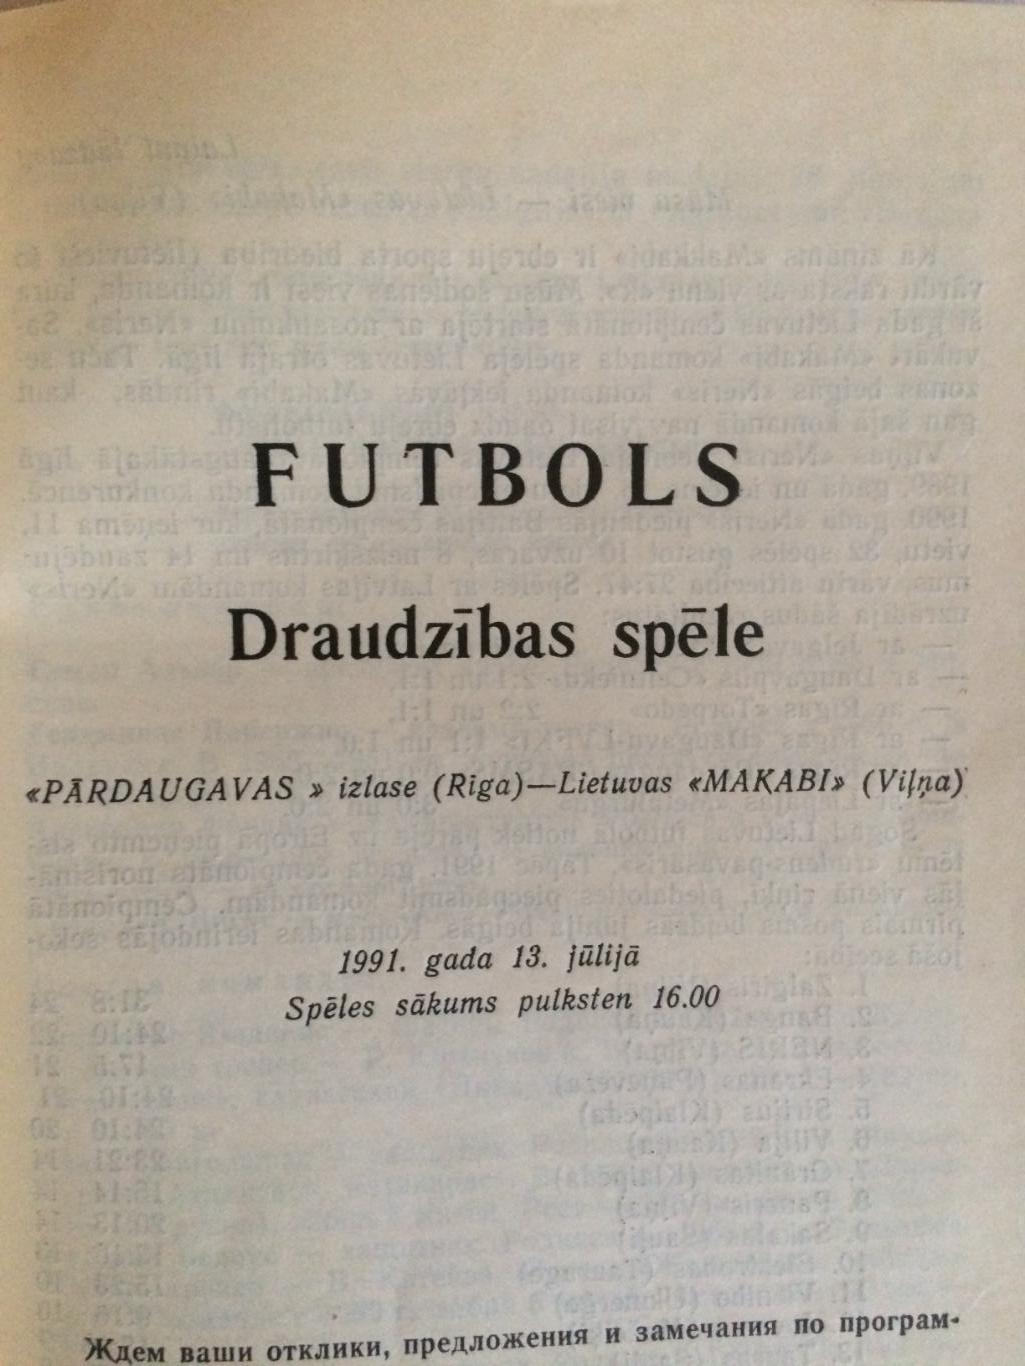 Пардаугава(Латвия) - Маккаби(Литва) 13.07.1991 Товарищеский матч 1